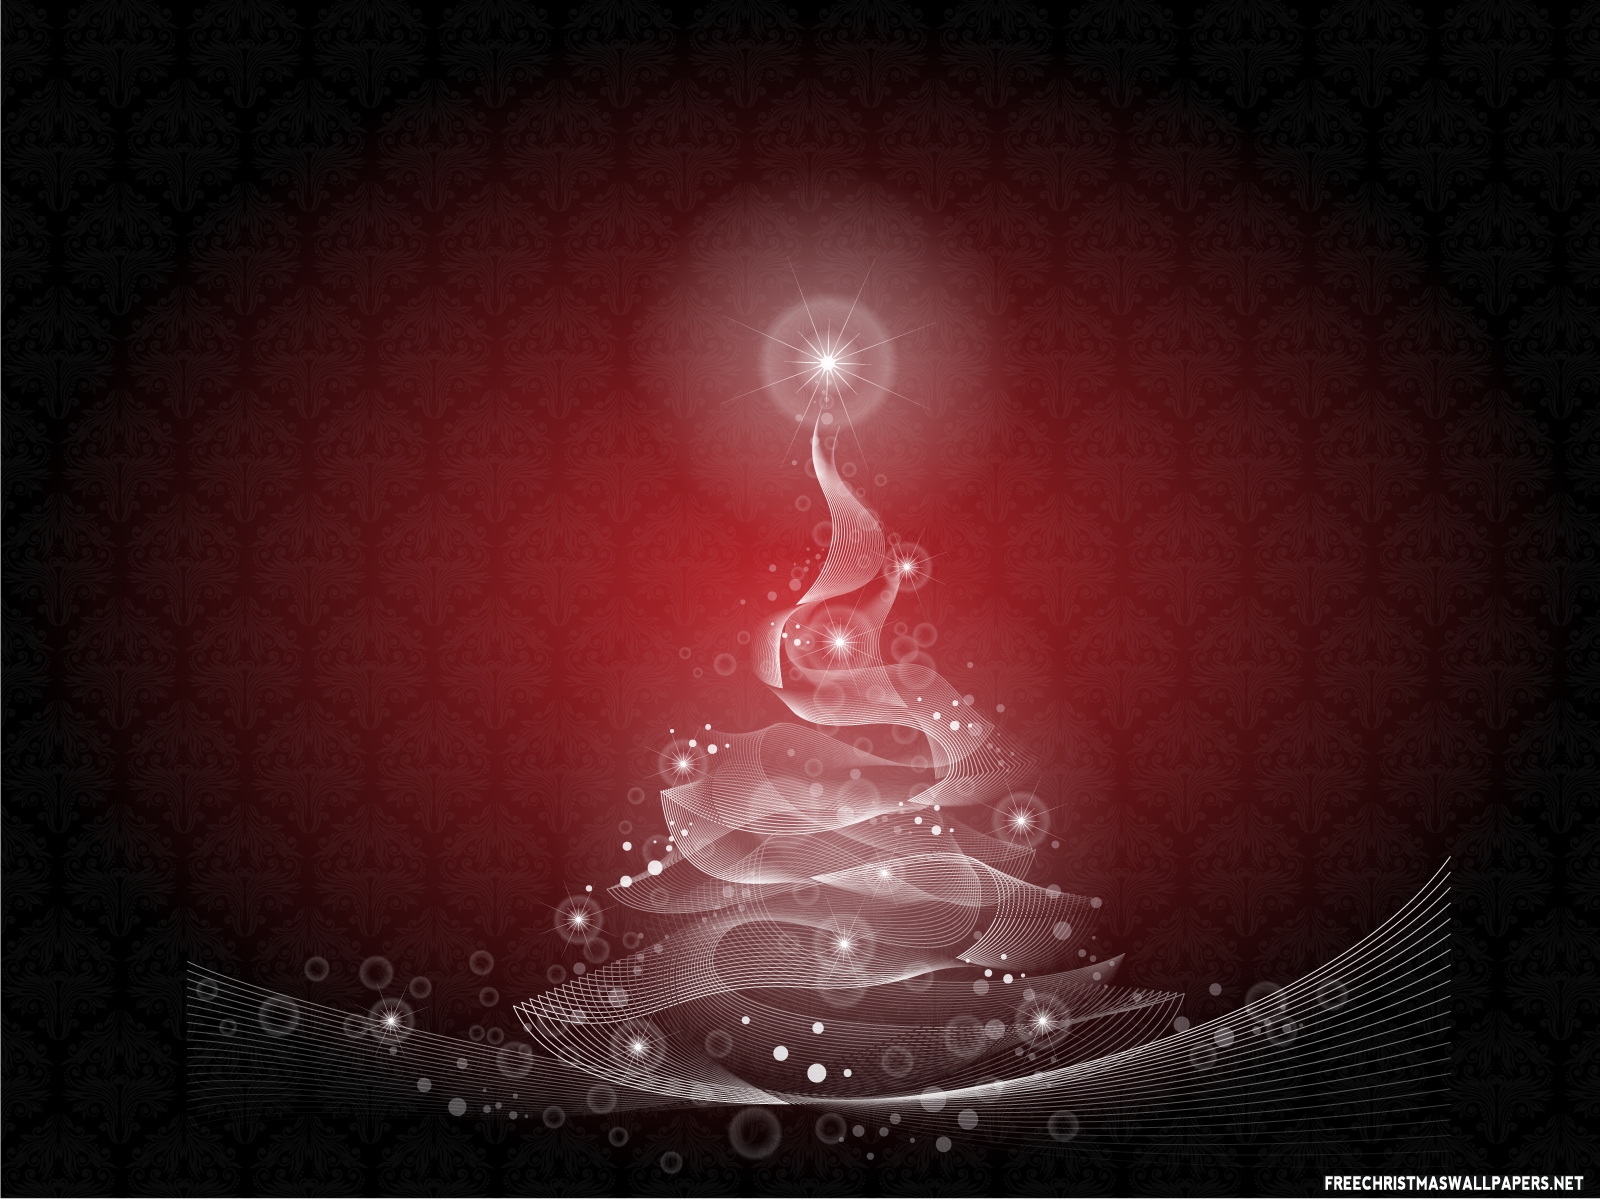 http://4.bp.blogspot.com/-g6qD4WuHUuU/TvWvOvjr_4I/AAAAAAAAAco/DWjMfSrAbPE/s1600/Spiritual-Christmas-Tree.jpeg